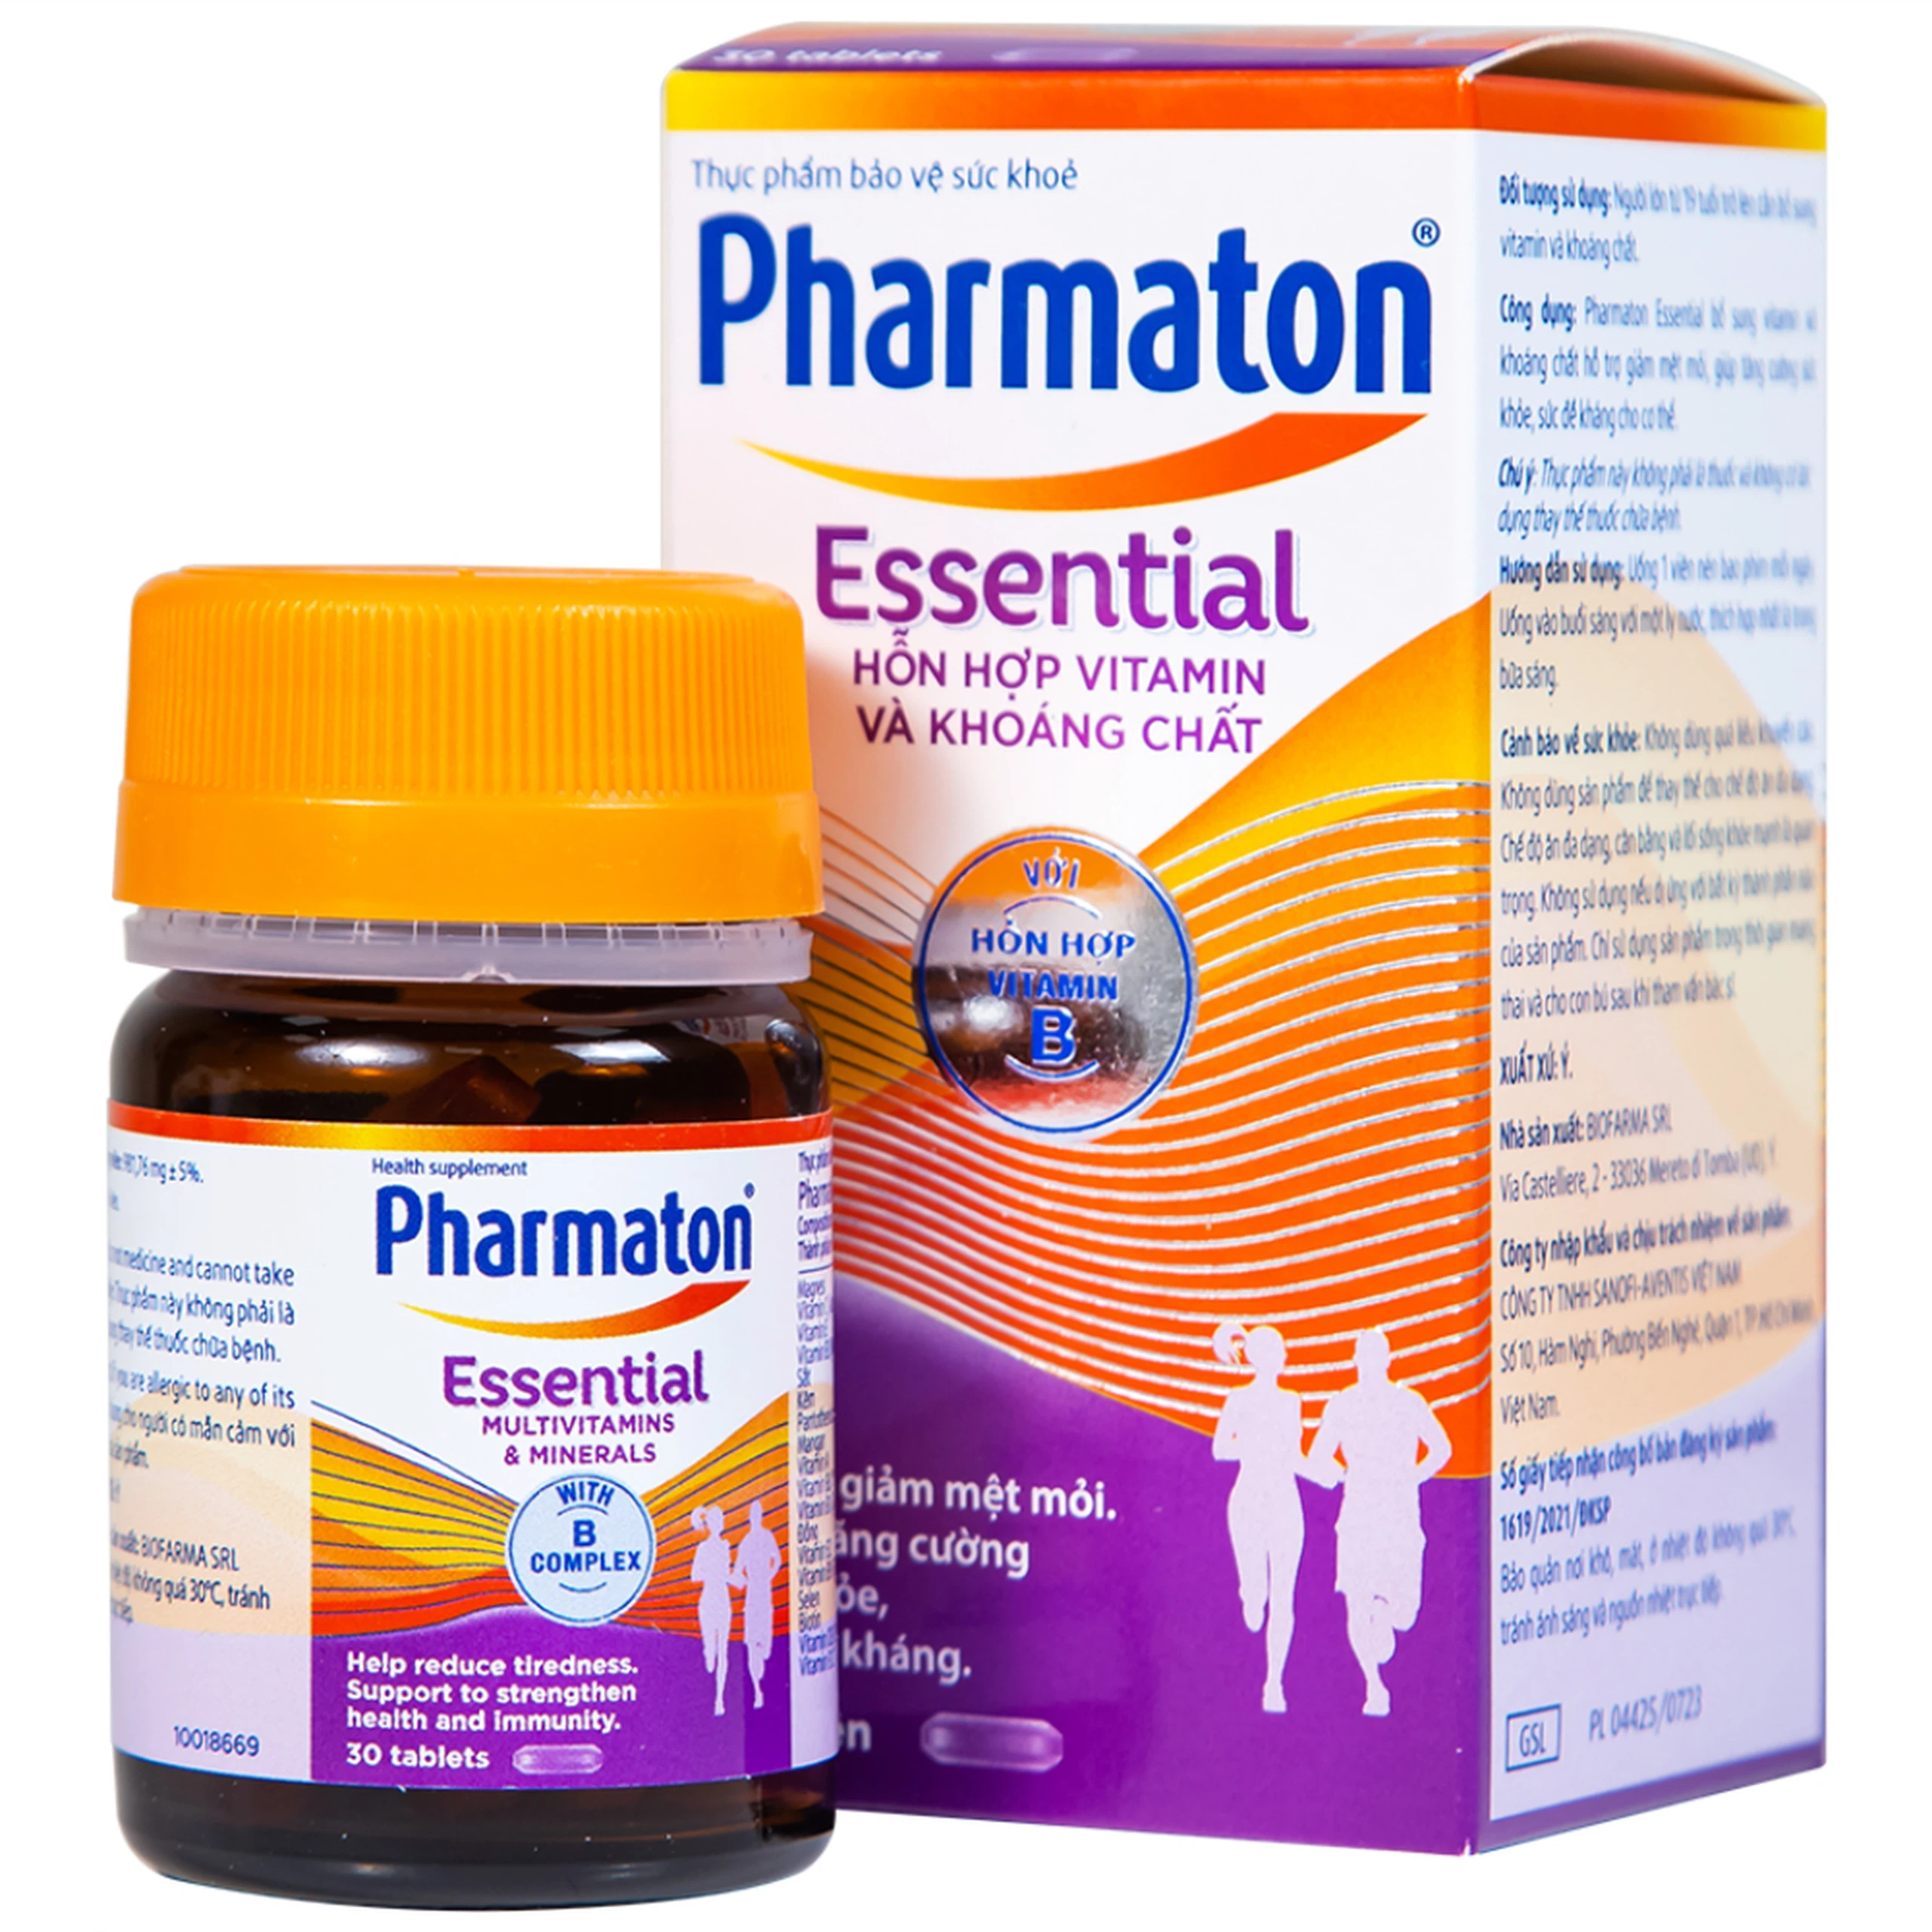 Viên uống Pharmaton Essential Multivitamins Minerals hỗn hợp Vitamin và khoáng chất, tăng cường sức khỏe (30 viên)  